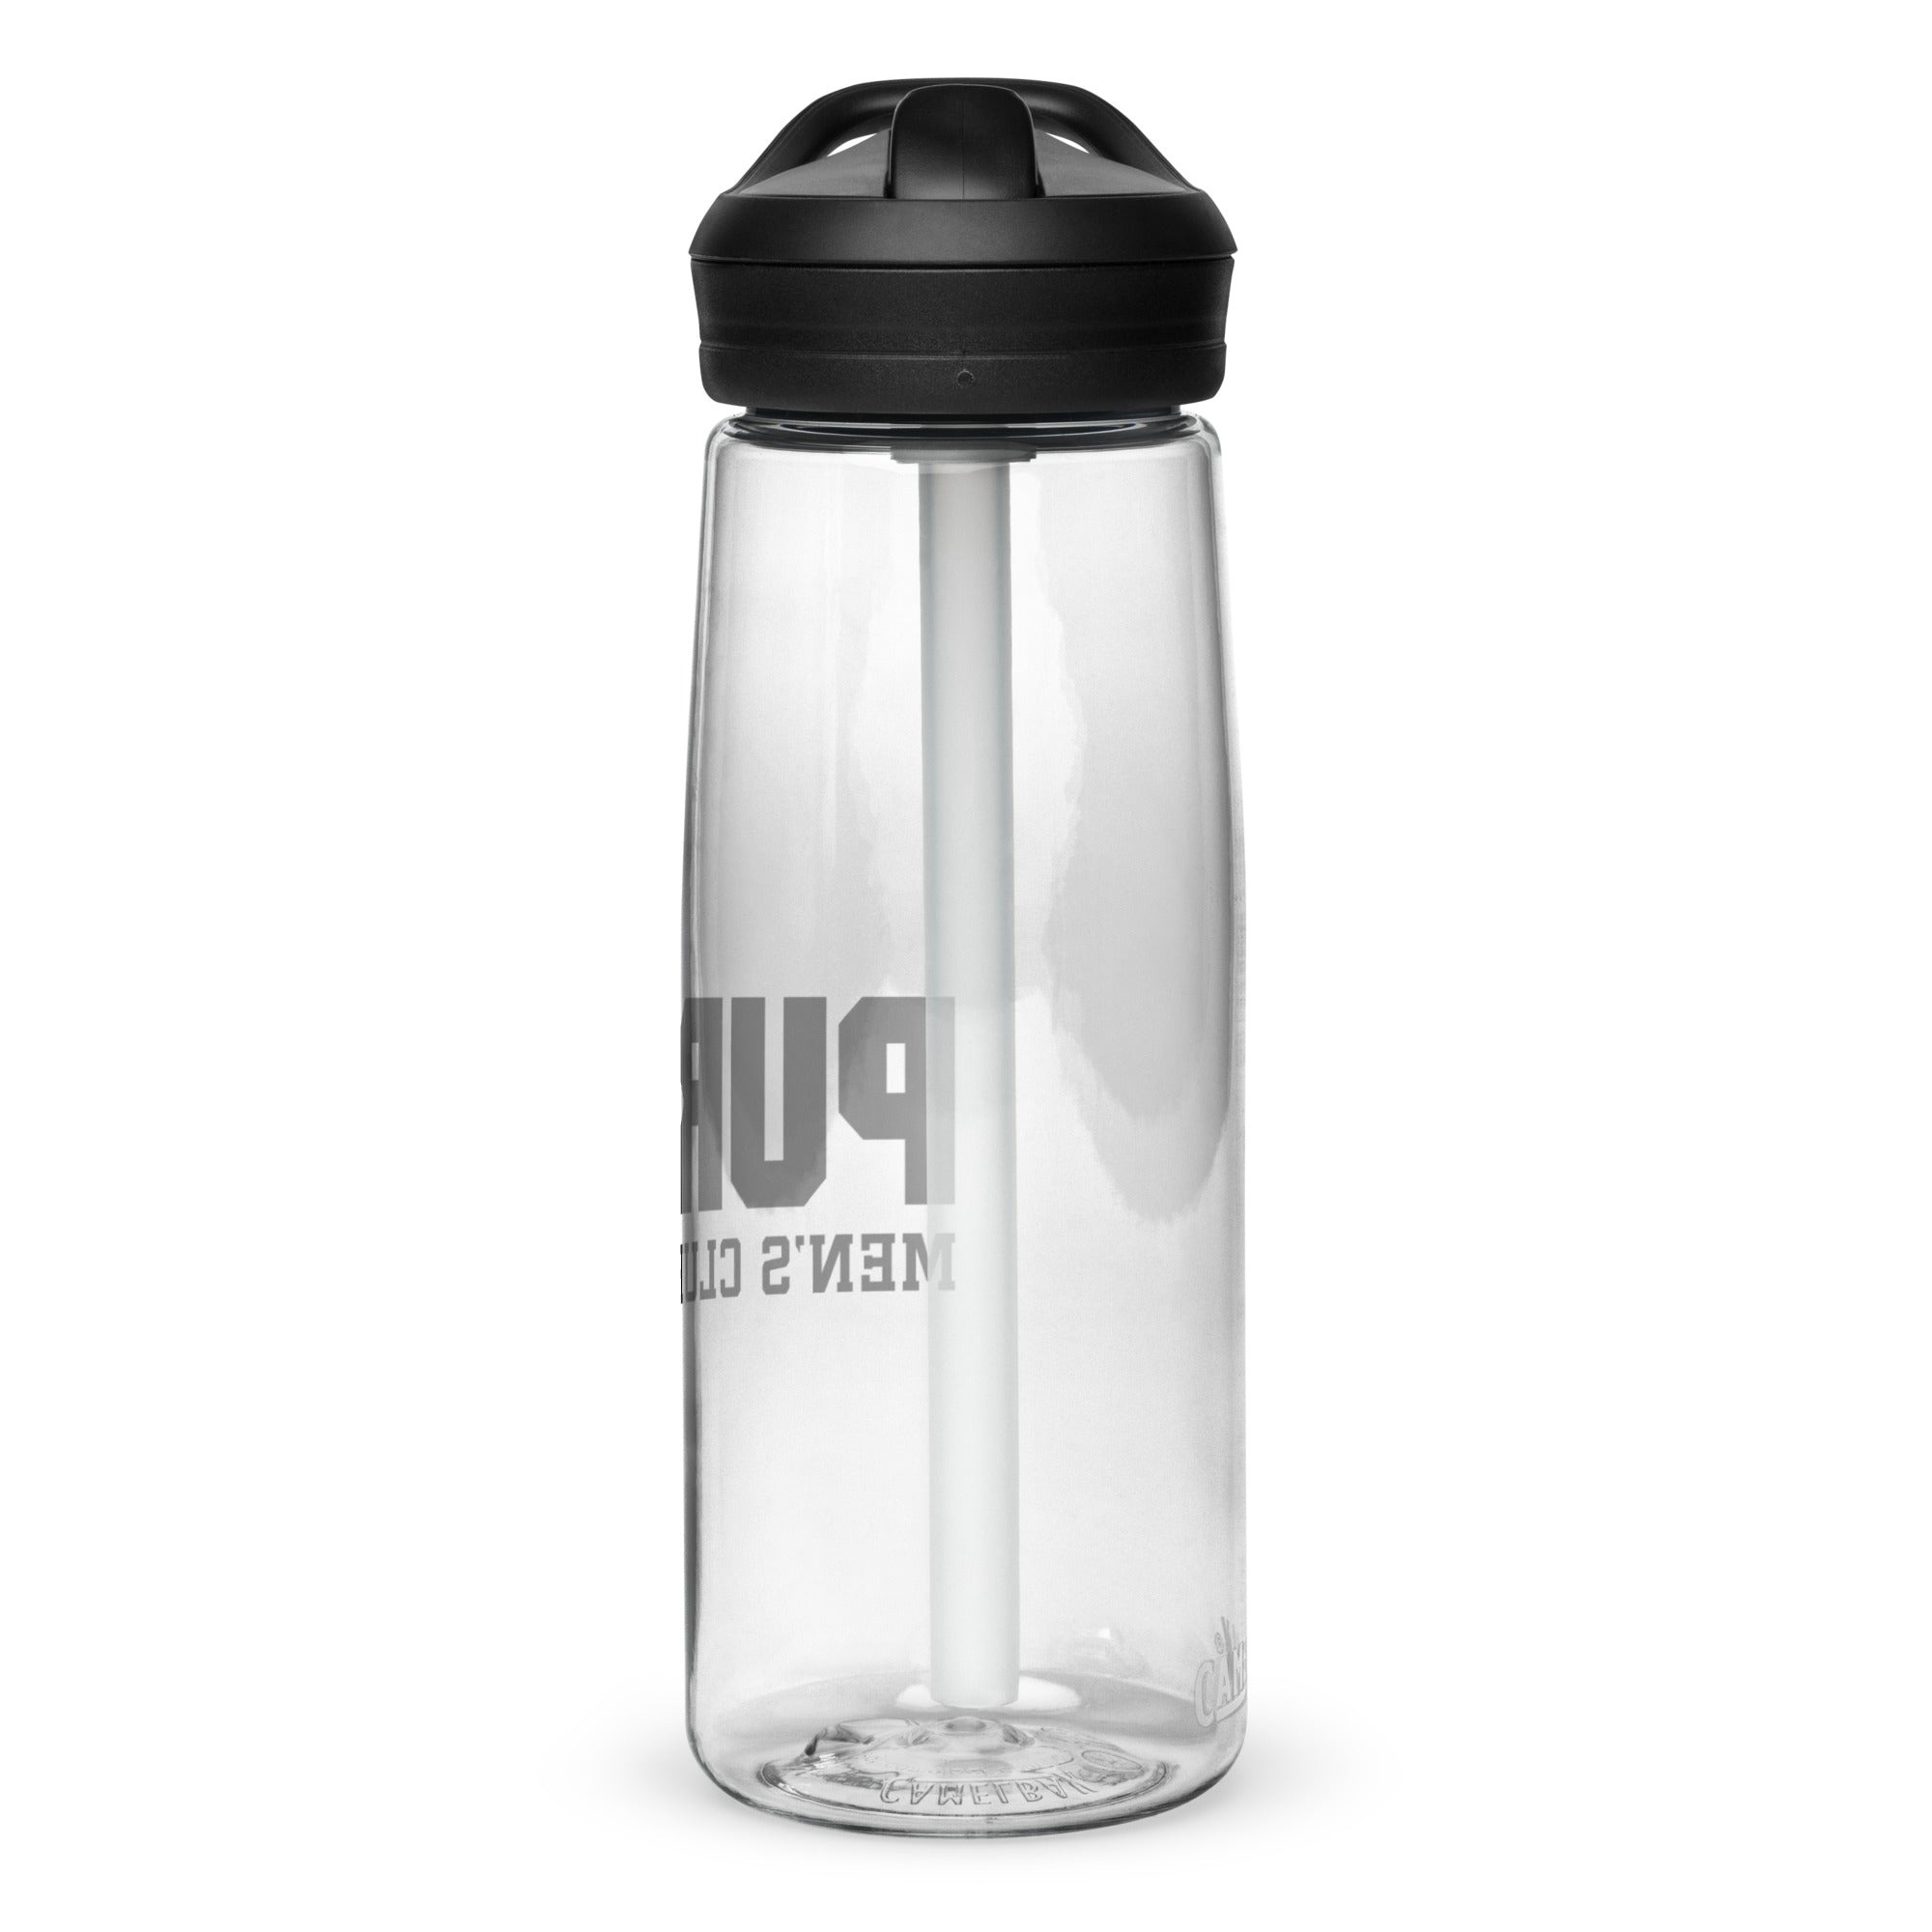 Purdue Sports water bottle